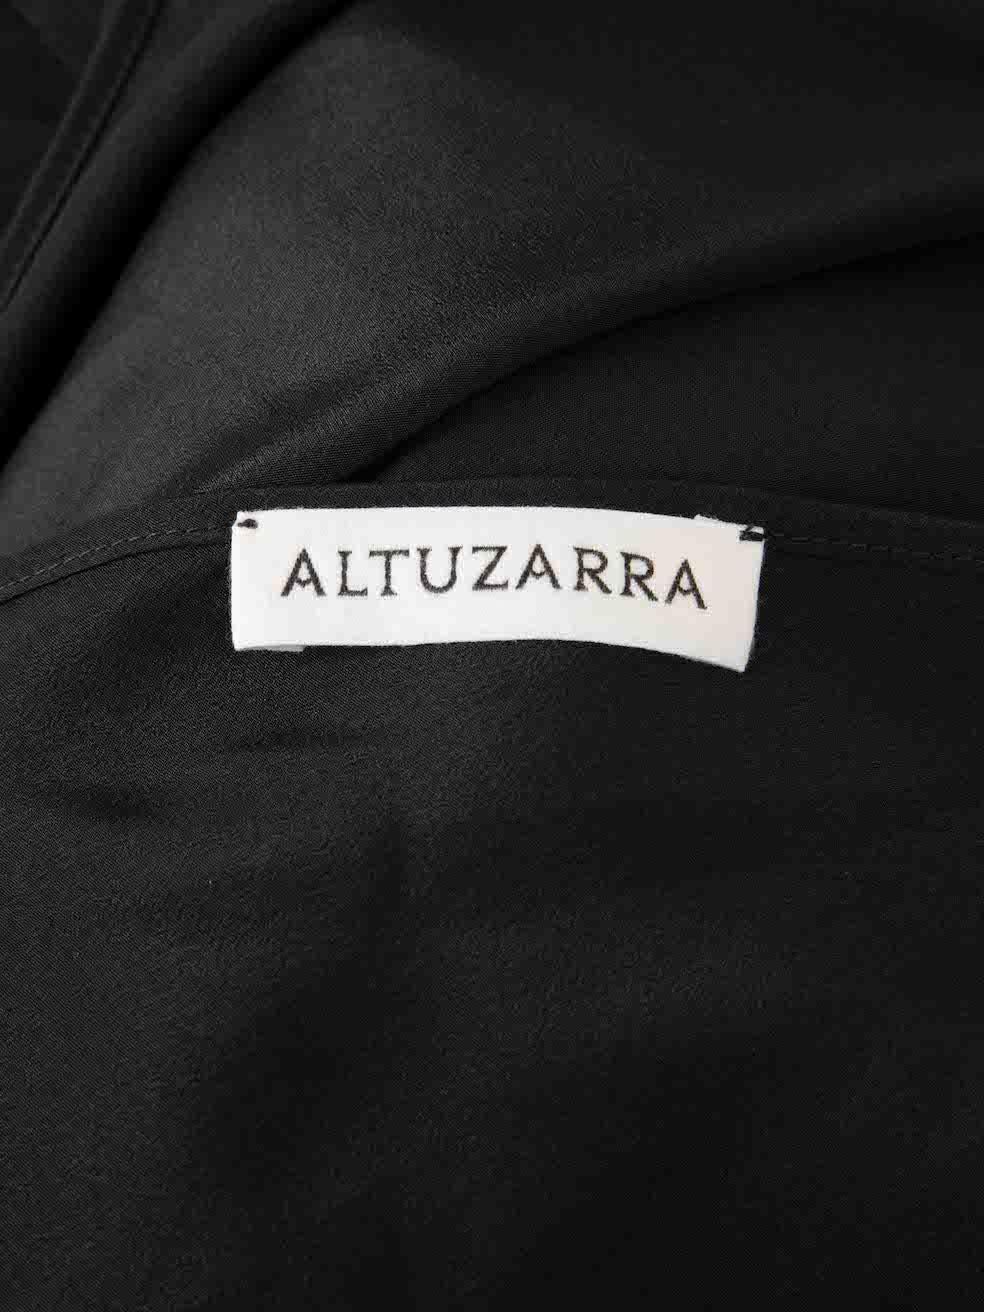 Altuzarra Black Lace Ruffle Trim Dress Size M For Sale 1